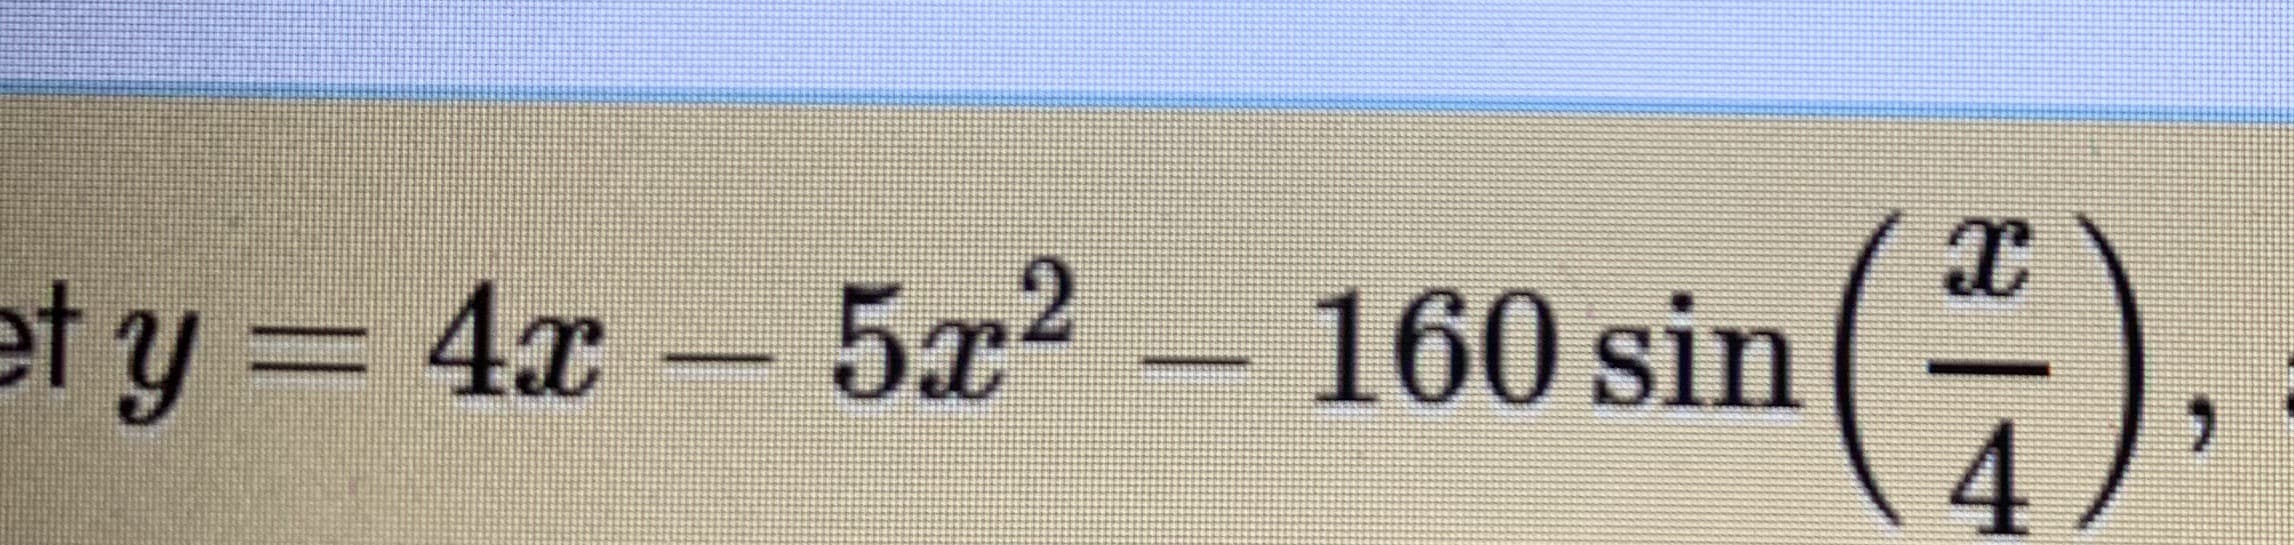 y= 4x- 572
160 sin
4,
